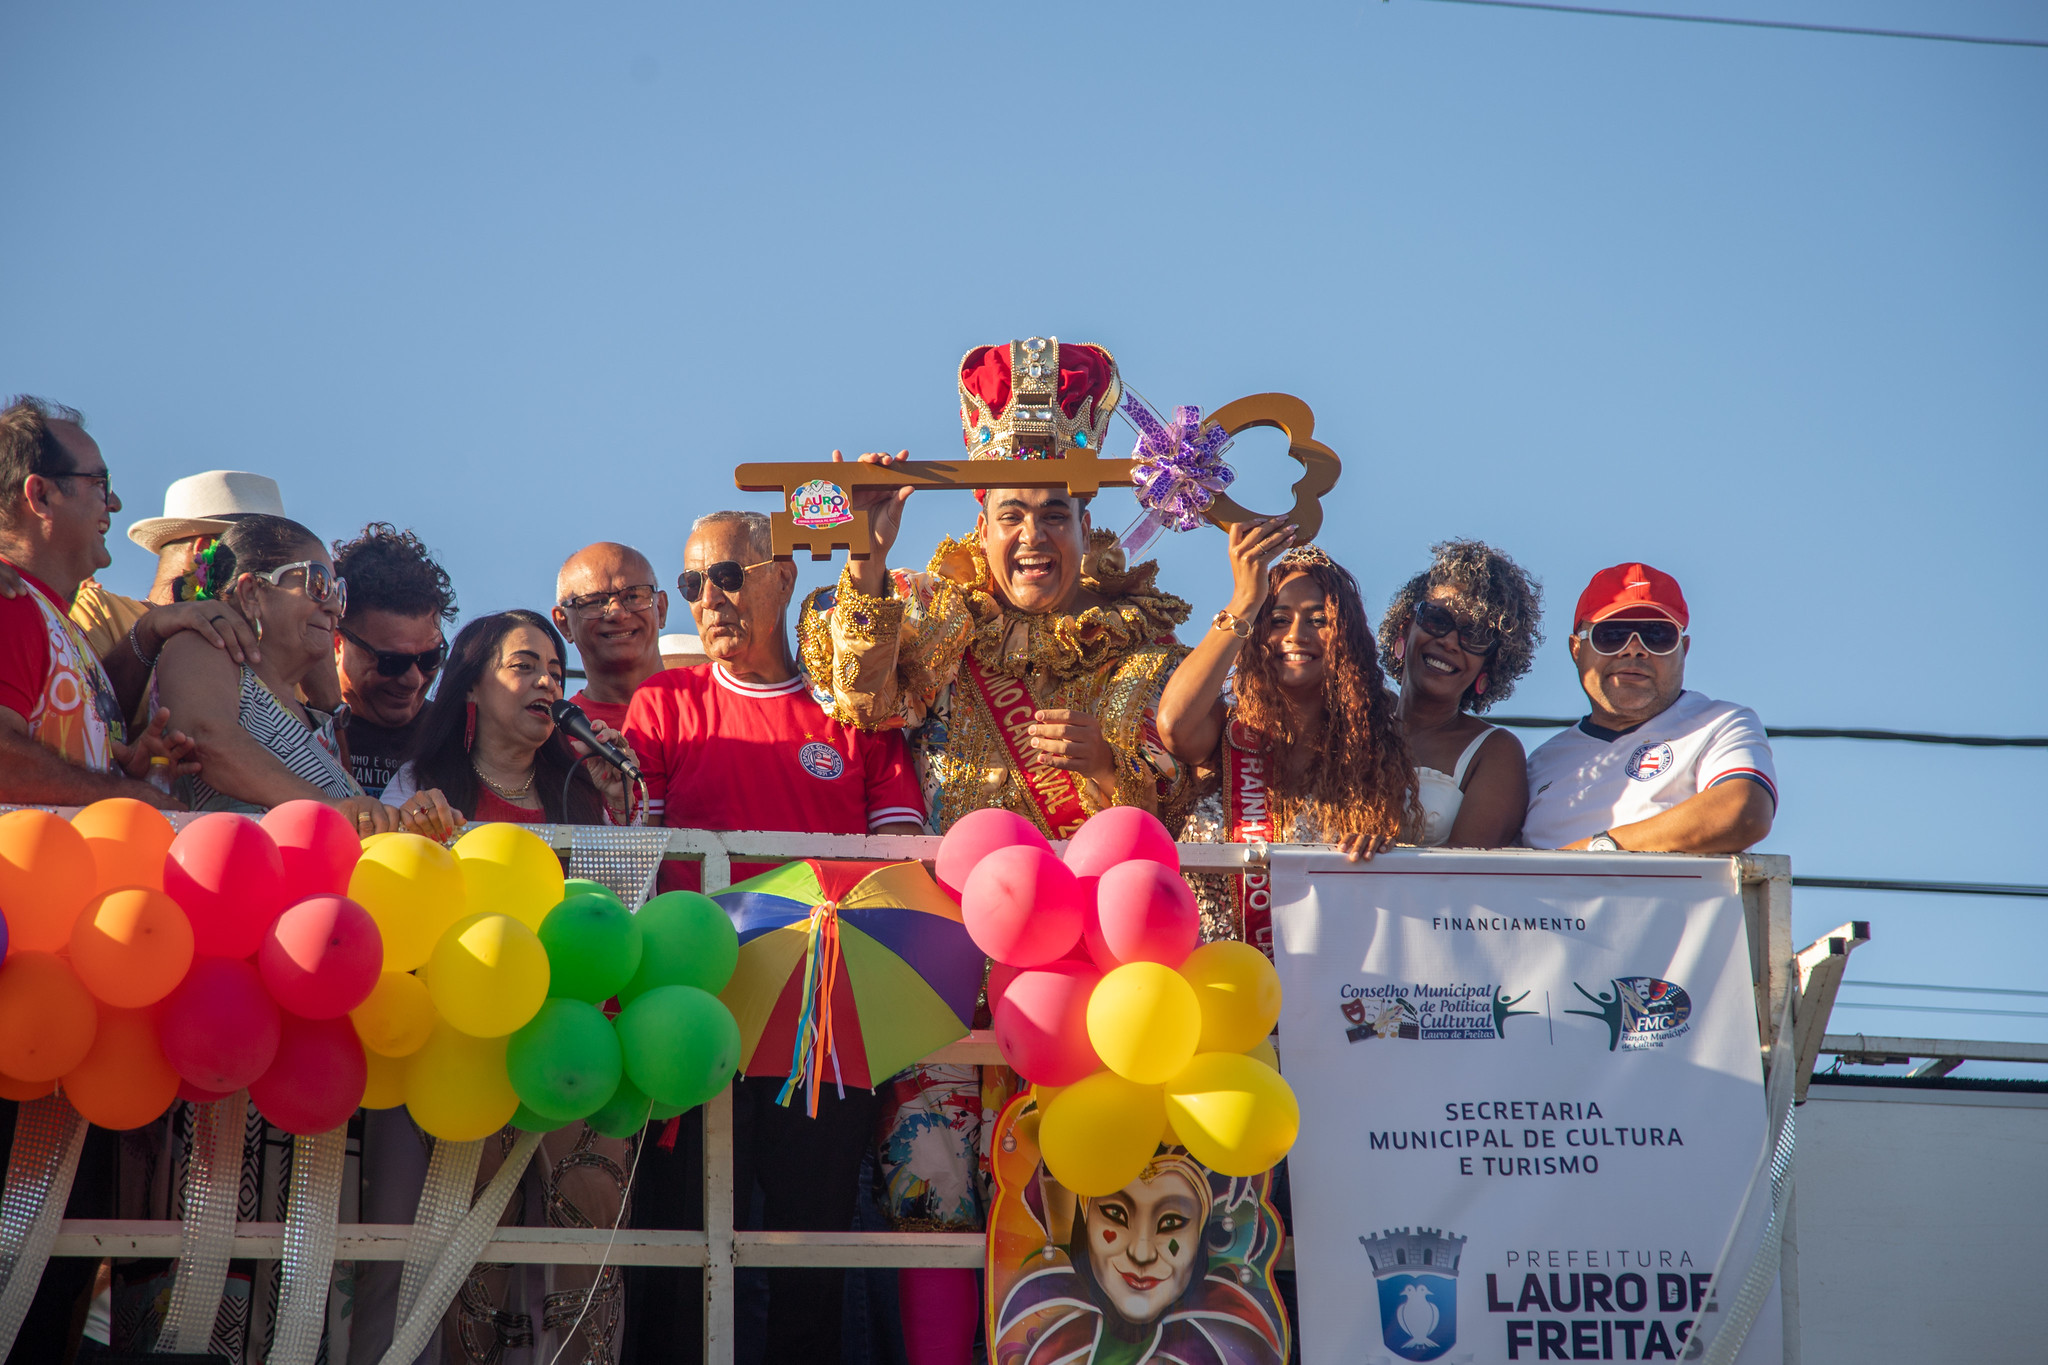 Prefeita entrega chave da cidade � fam�lia do eterno Rei Momo Duzinho Nery e Carnaval come�a em Lauro de Freitas